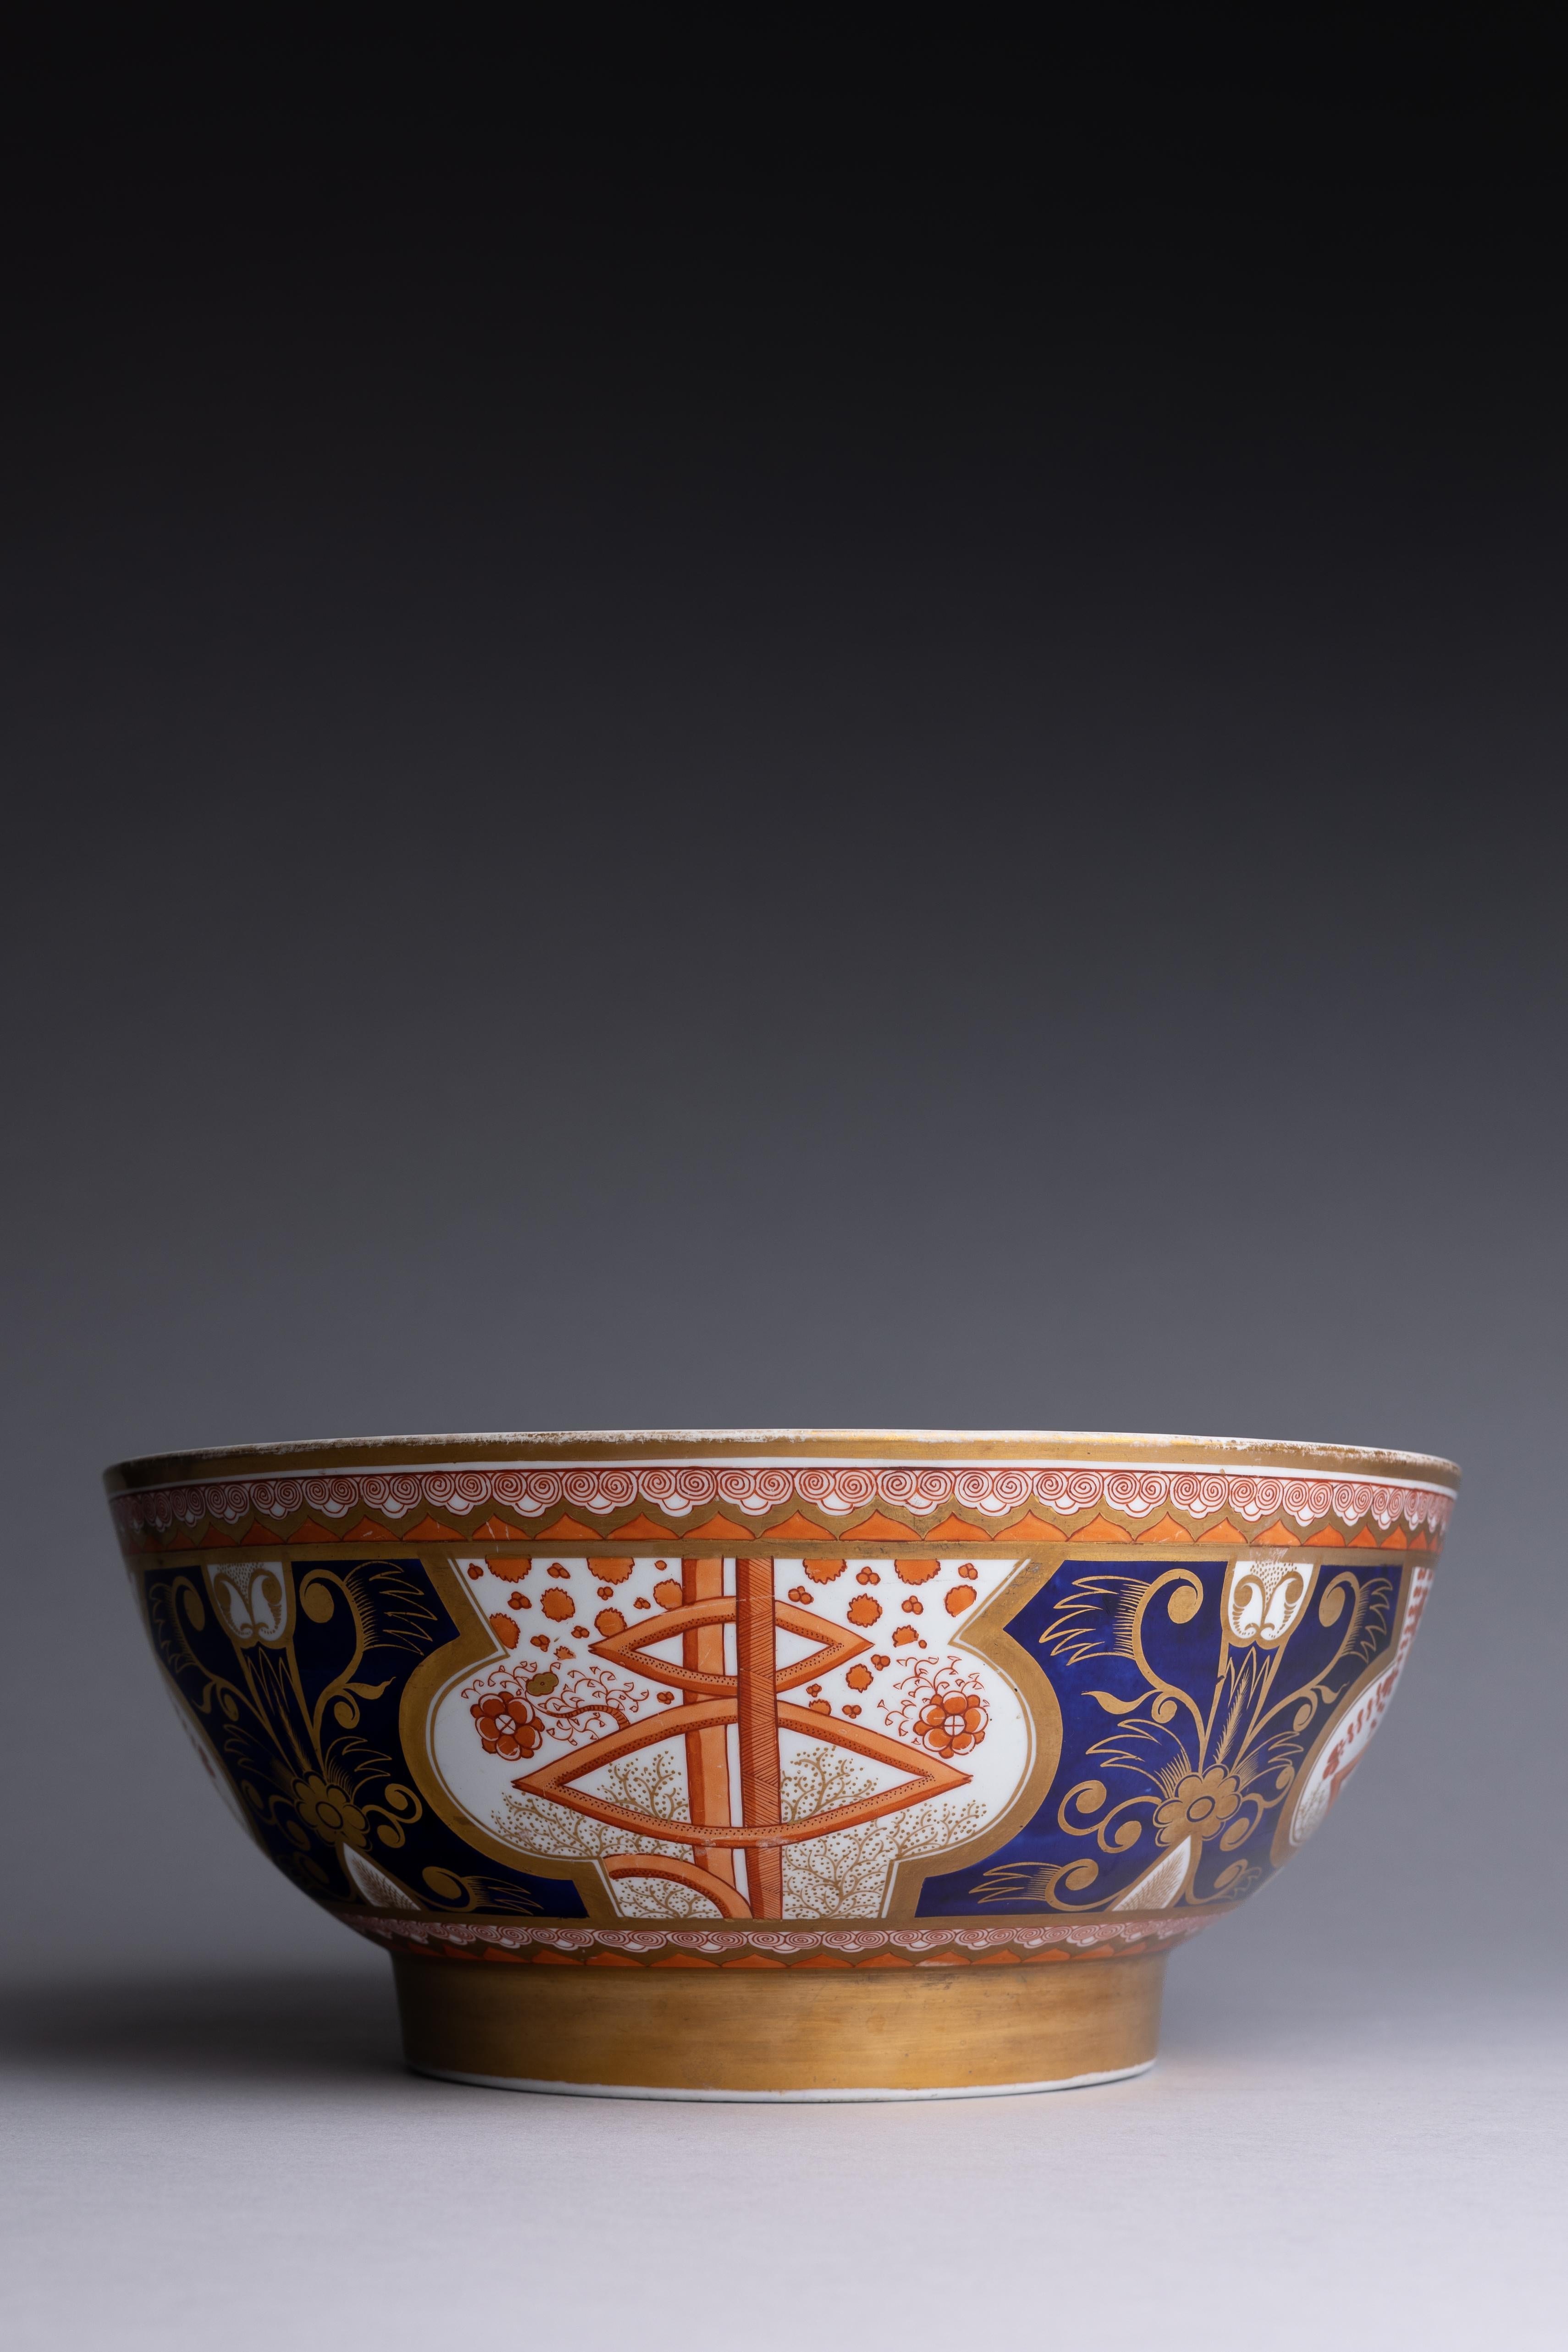 Grand bol à punch en porcelaine Spode Regency au motif Dollar, fabriqué en Angleterre vers 1810.

Ce bol à punch, conçu par des potiers anglais d'après des motifs asiatiques et nommé d'après une monnaie américaine, présente un exemple fascinant de